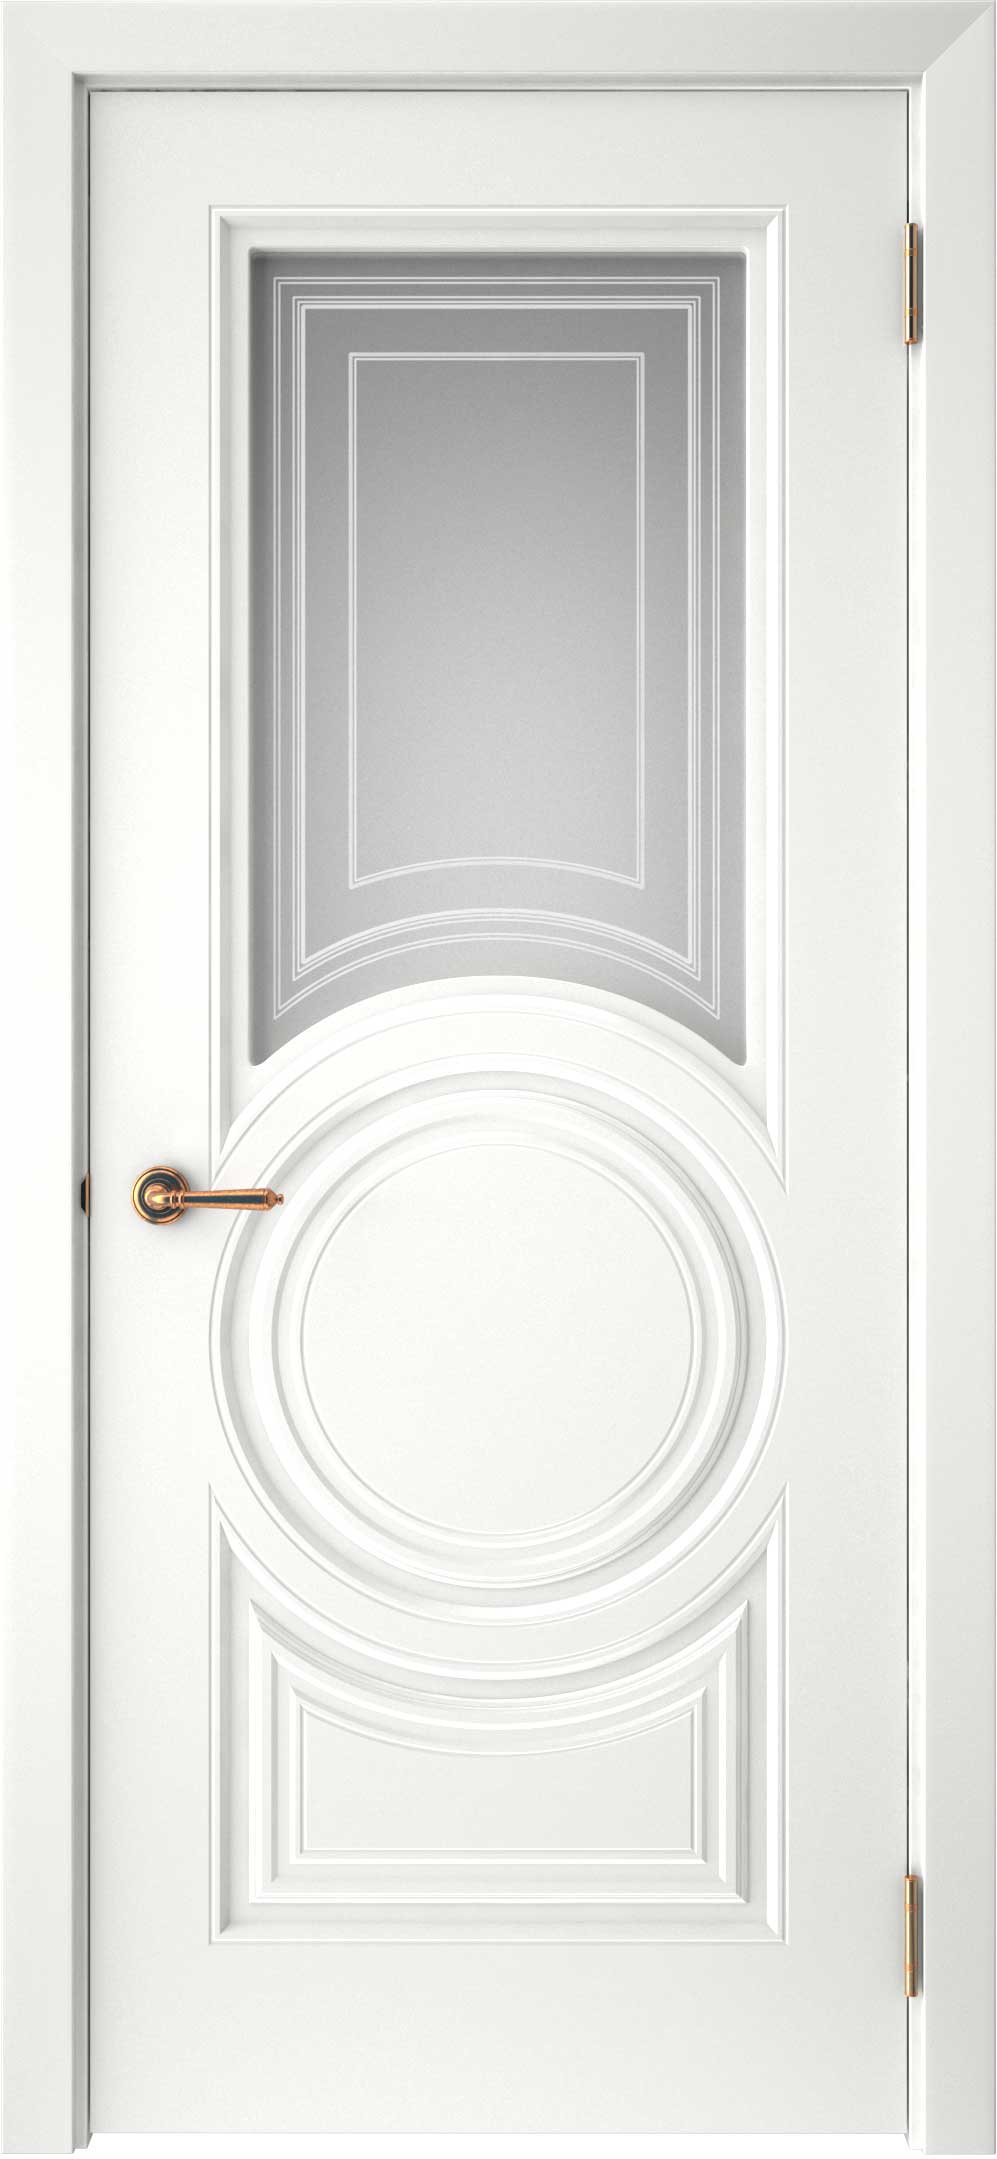 Двери крашеные (Эмаль) ТЕКОНА Смальта-45 со стеклом Белый ral размер 200 х 80 см. артикул F0000093318